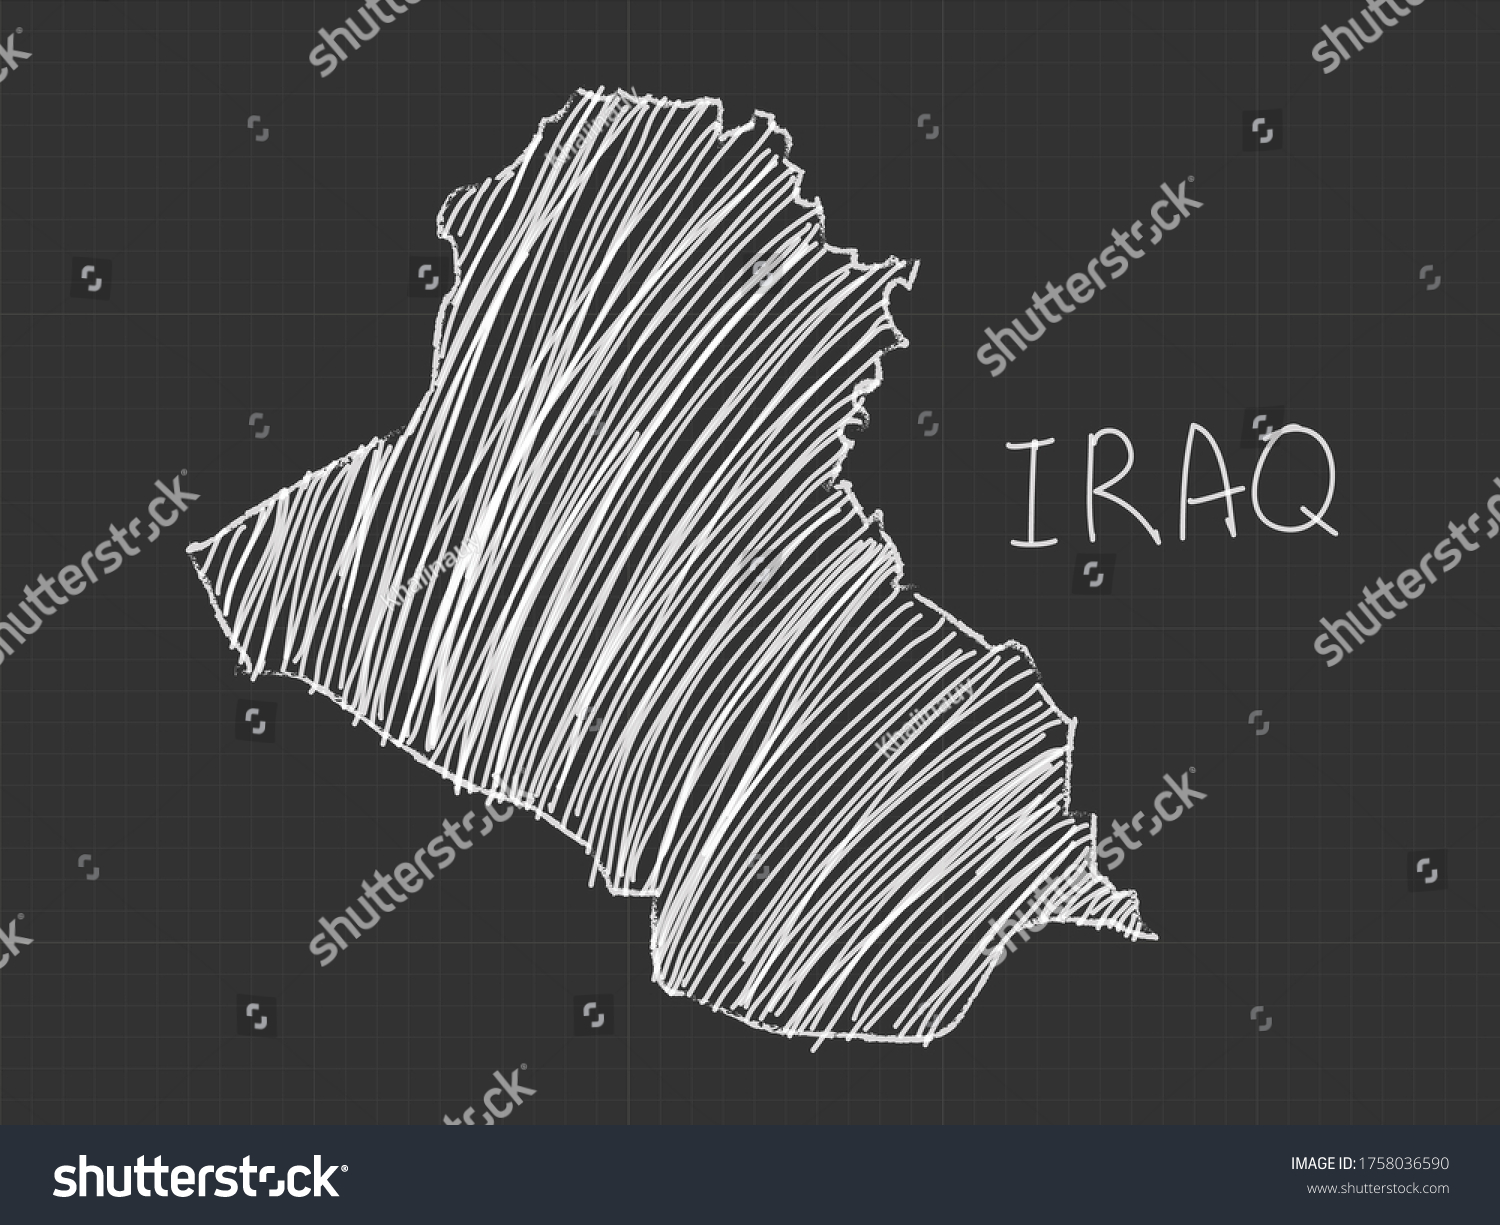 Iraq Map Freehand Sketch On Black เวกเตอรสตอก ปลอดคาลขสทธ Shutterstock